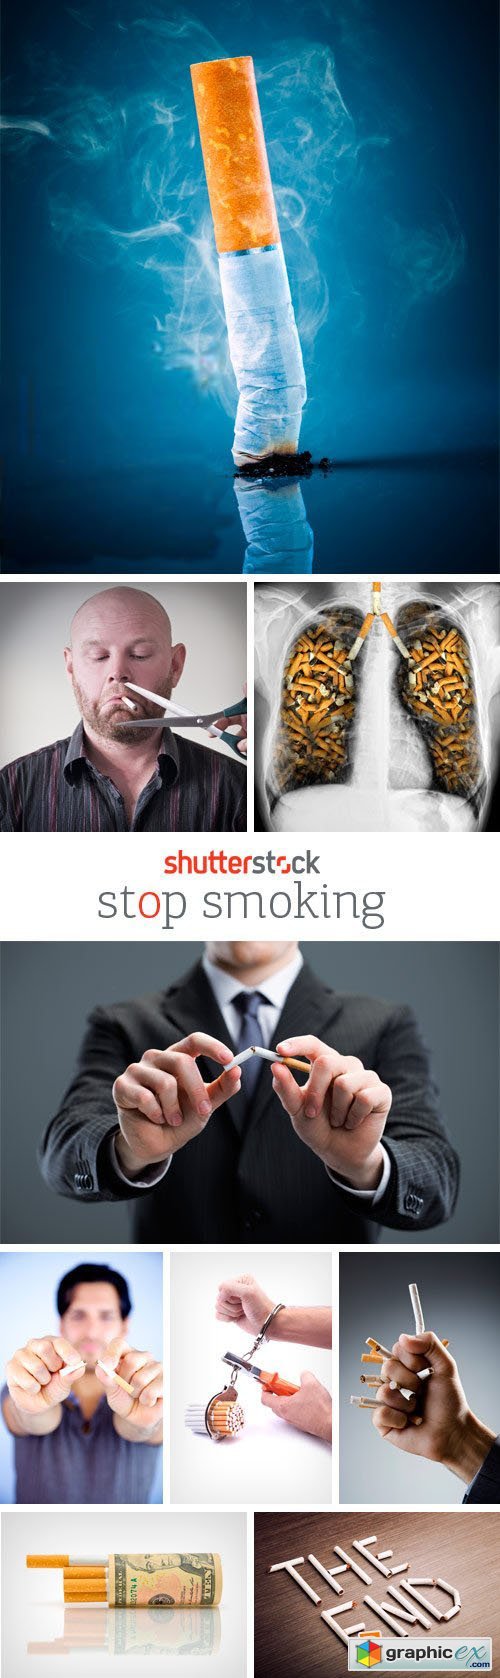 Amazing SS - Stop Smoking, 25xJPG